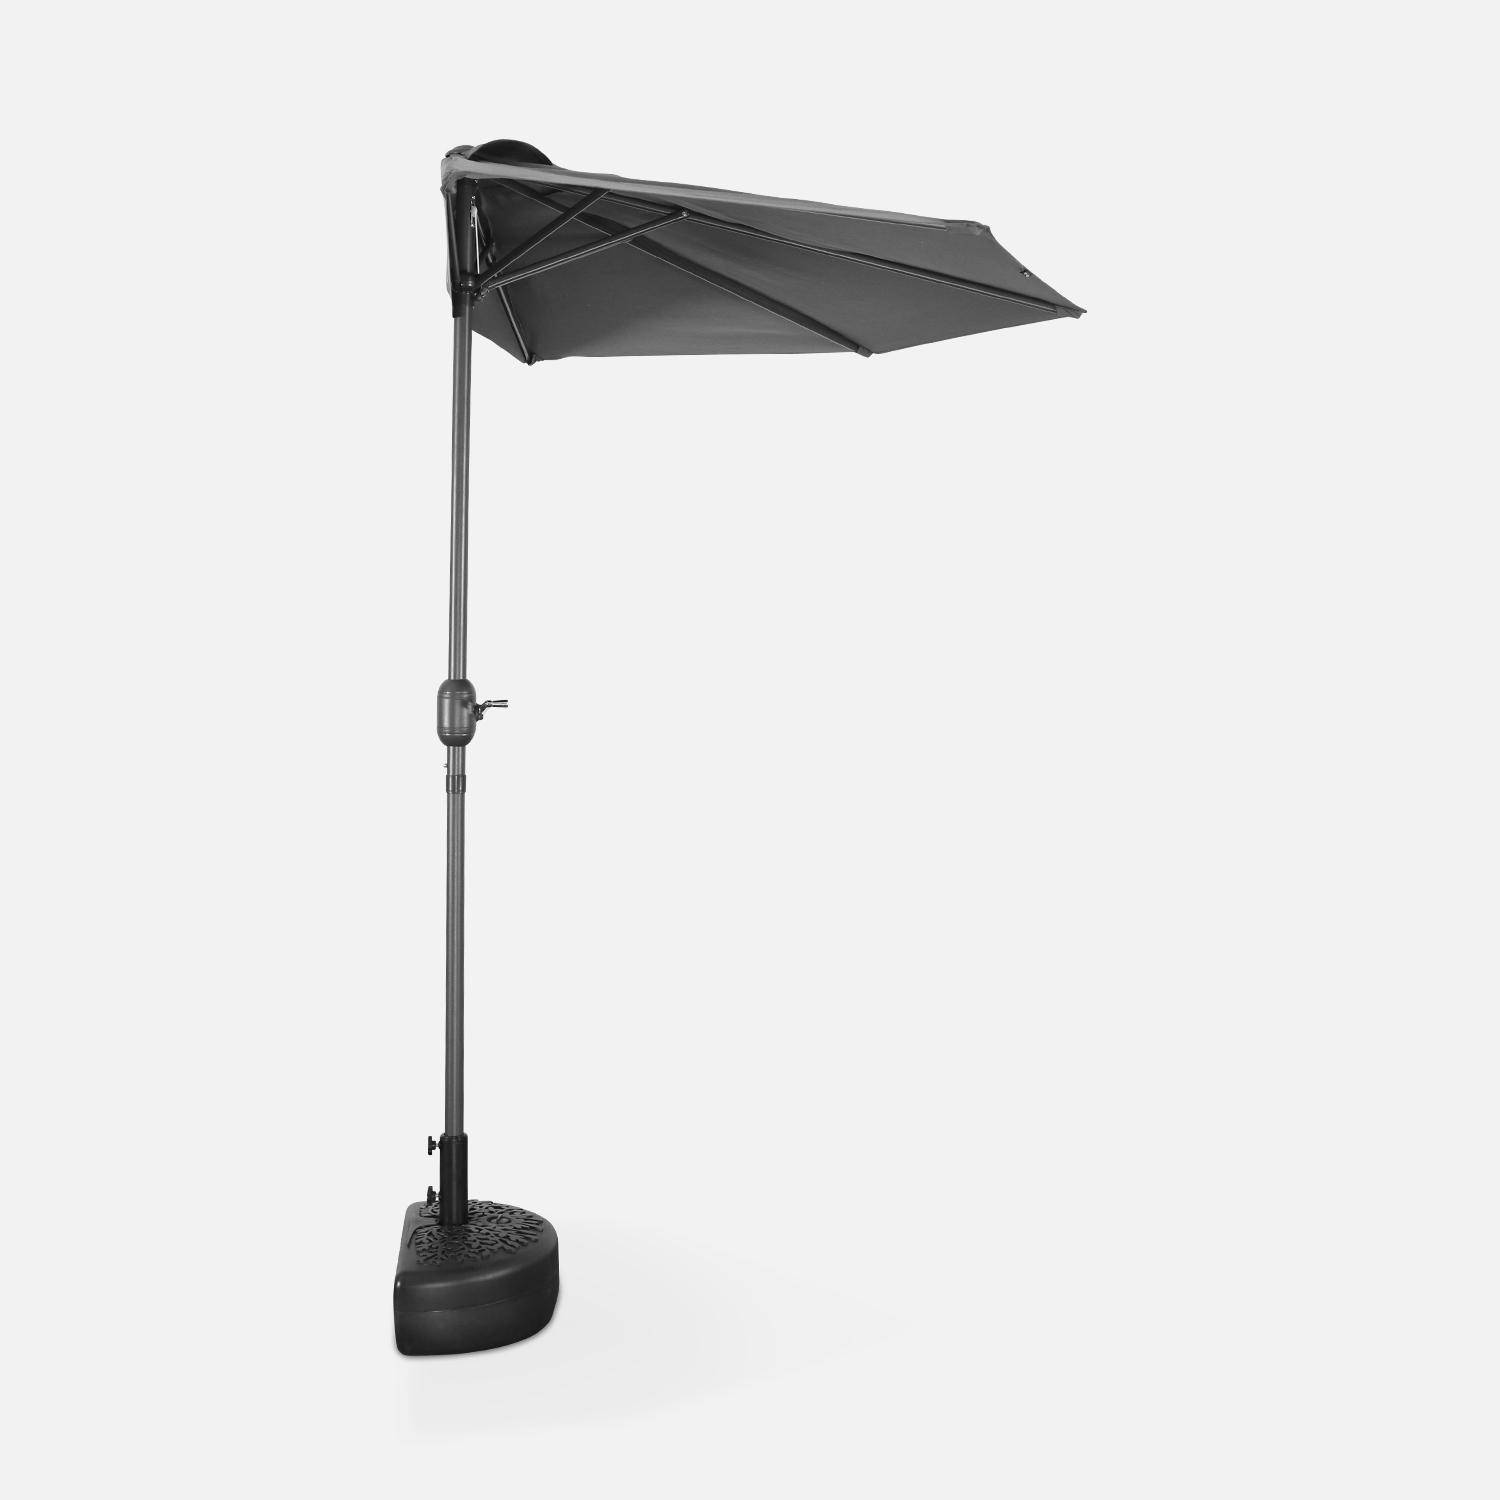  Parasol para balcón Ø250cm - CALVI - Medio parasol recto, mástil de aluminio con manivela, tejido gris Photo3